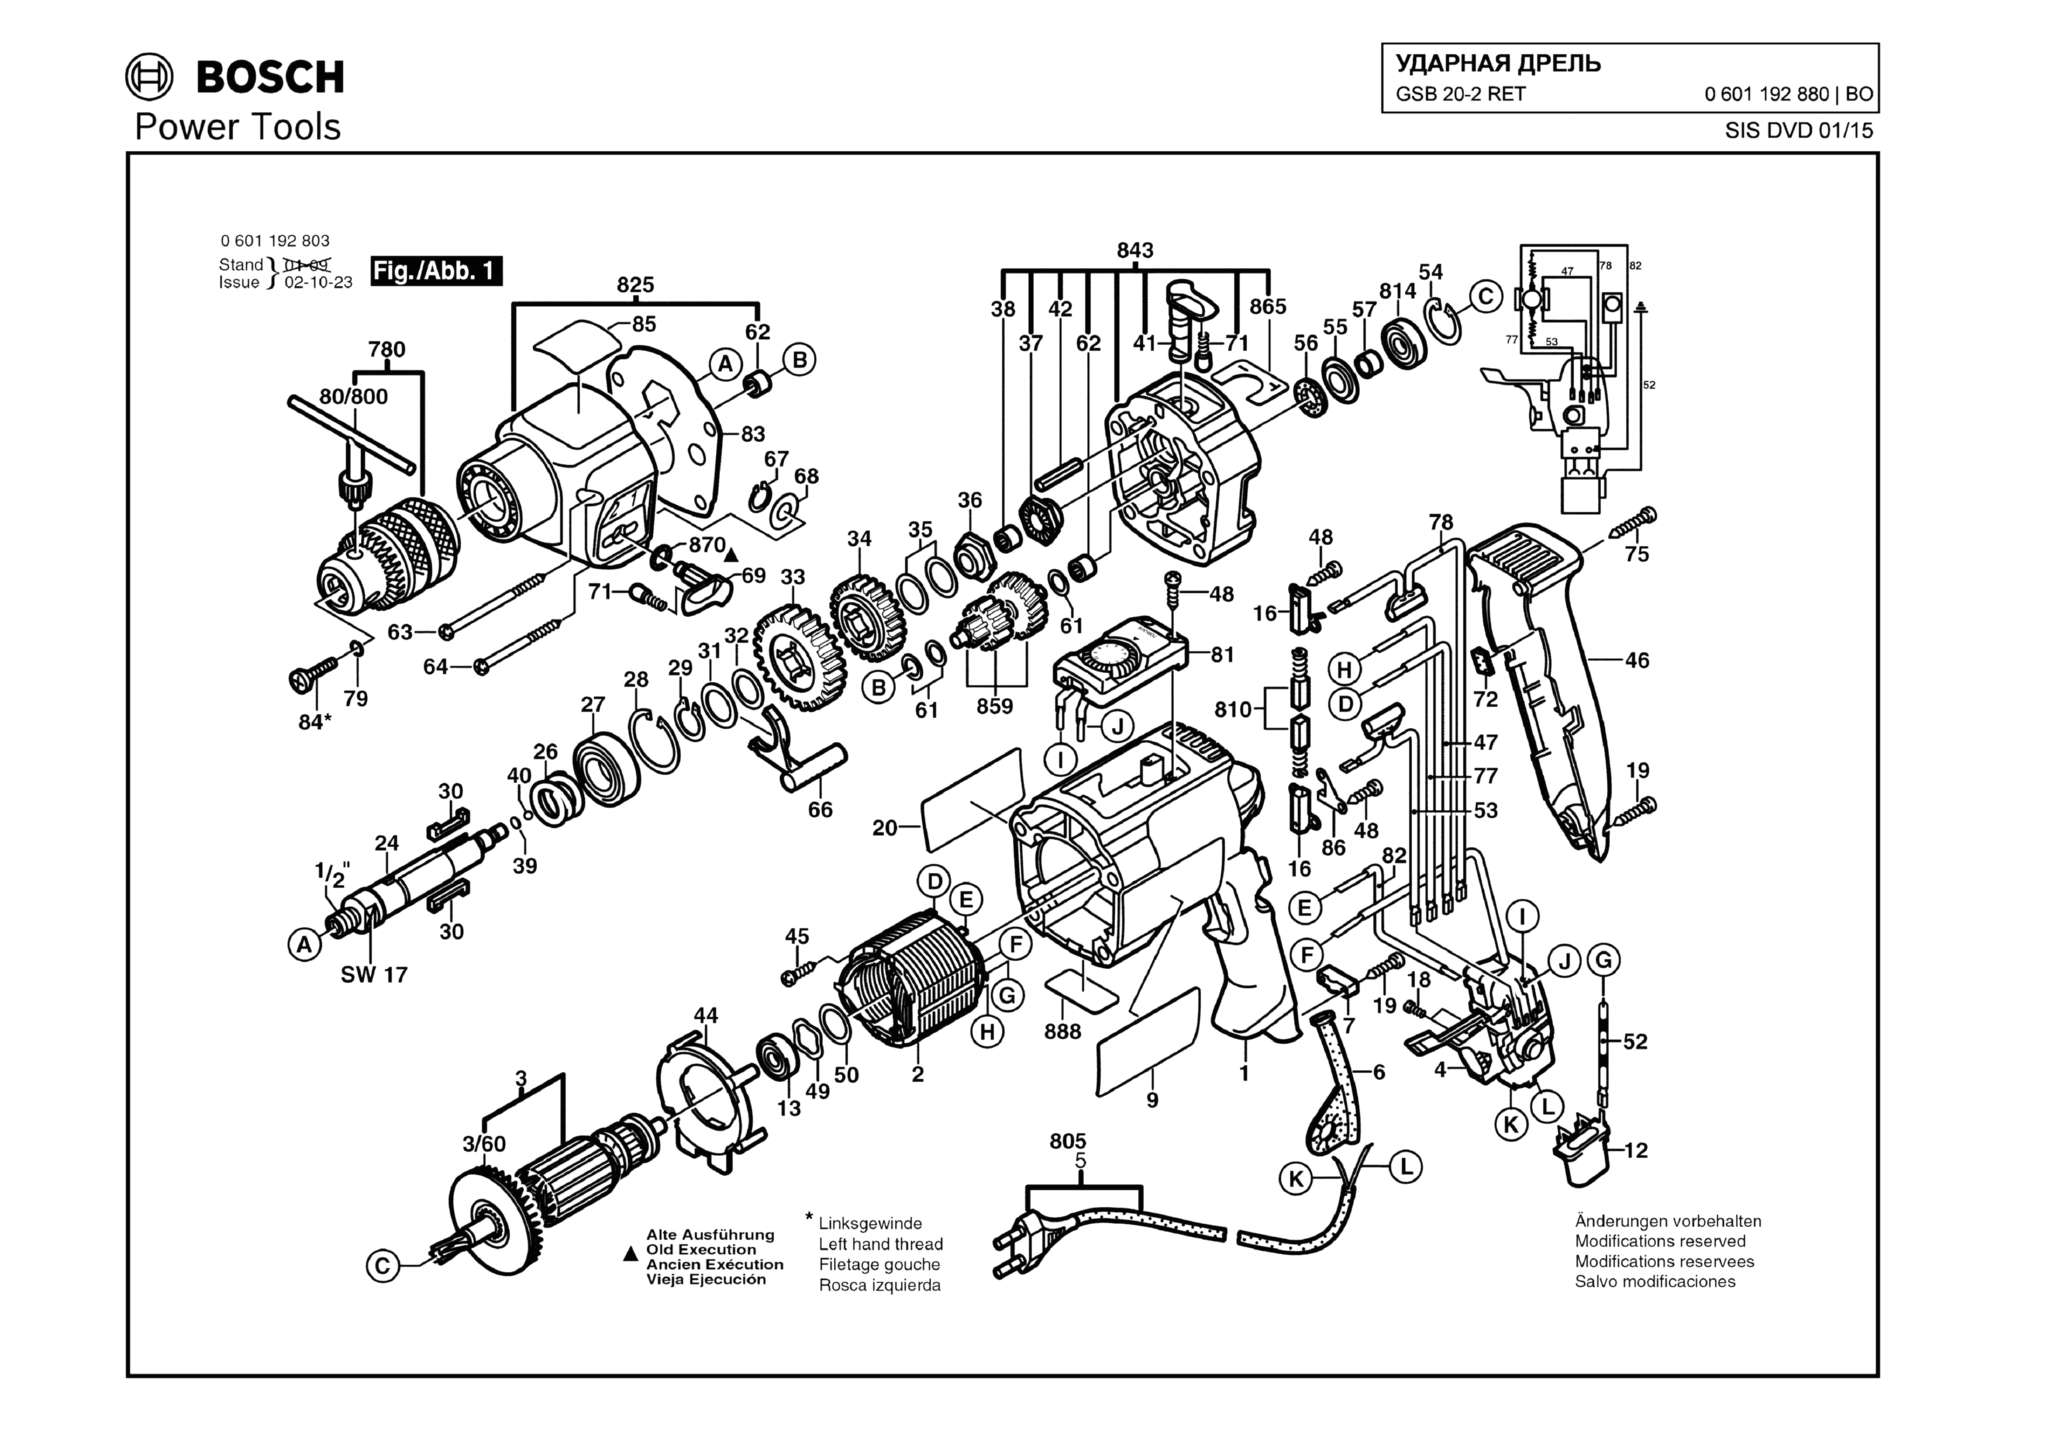 Запчасти, схема и деталировка Bosch GSB 20-2 RET (ТИП 0601192880)